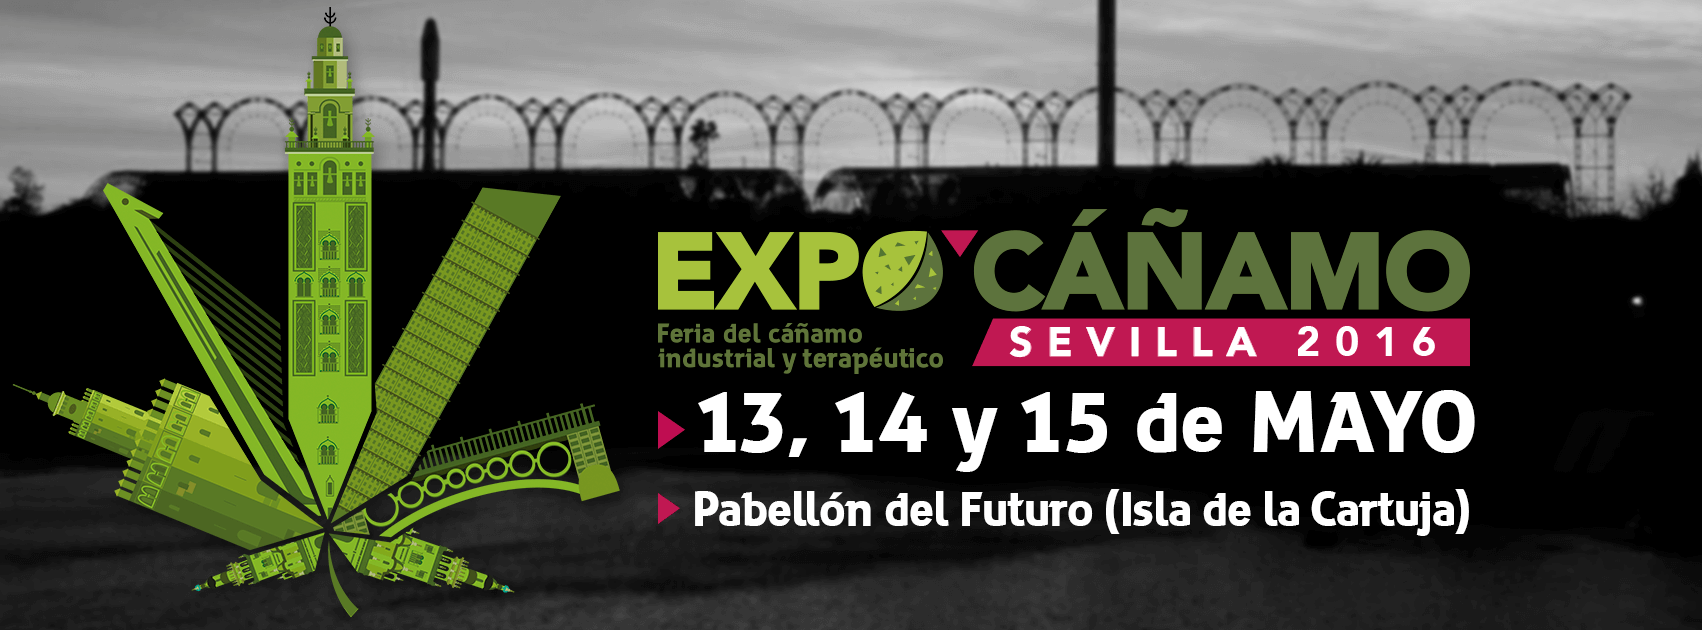 ExpoCañamo Sevilla 2016